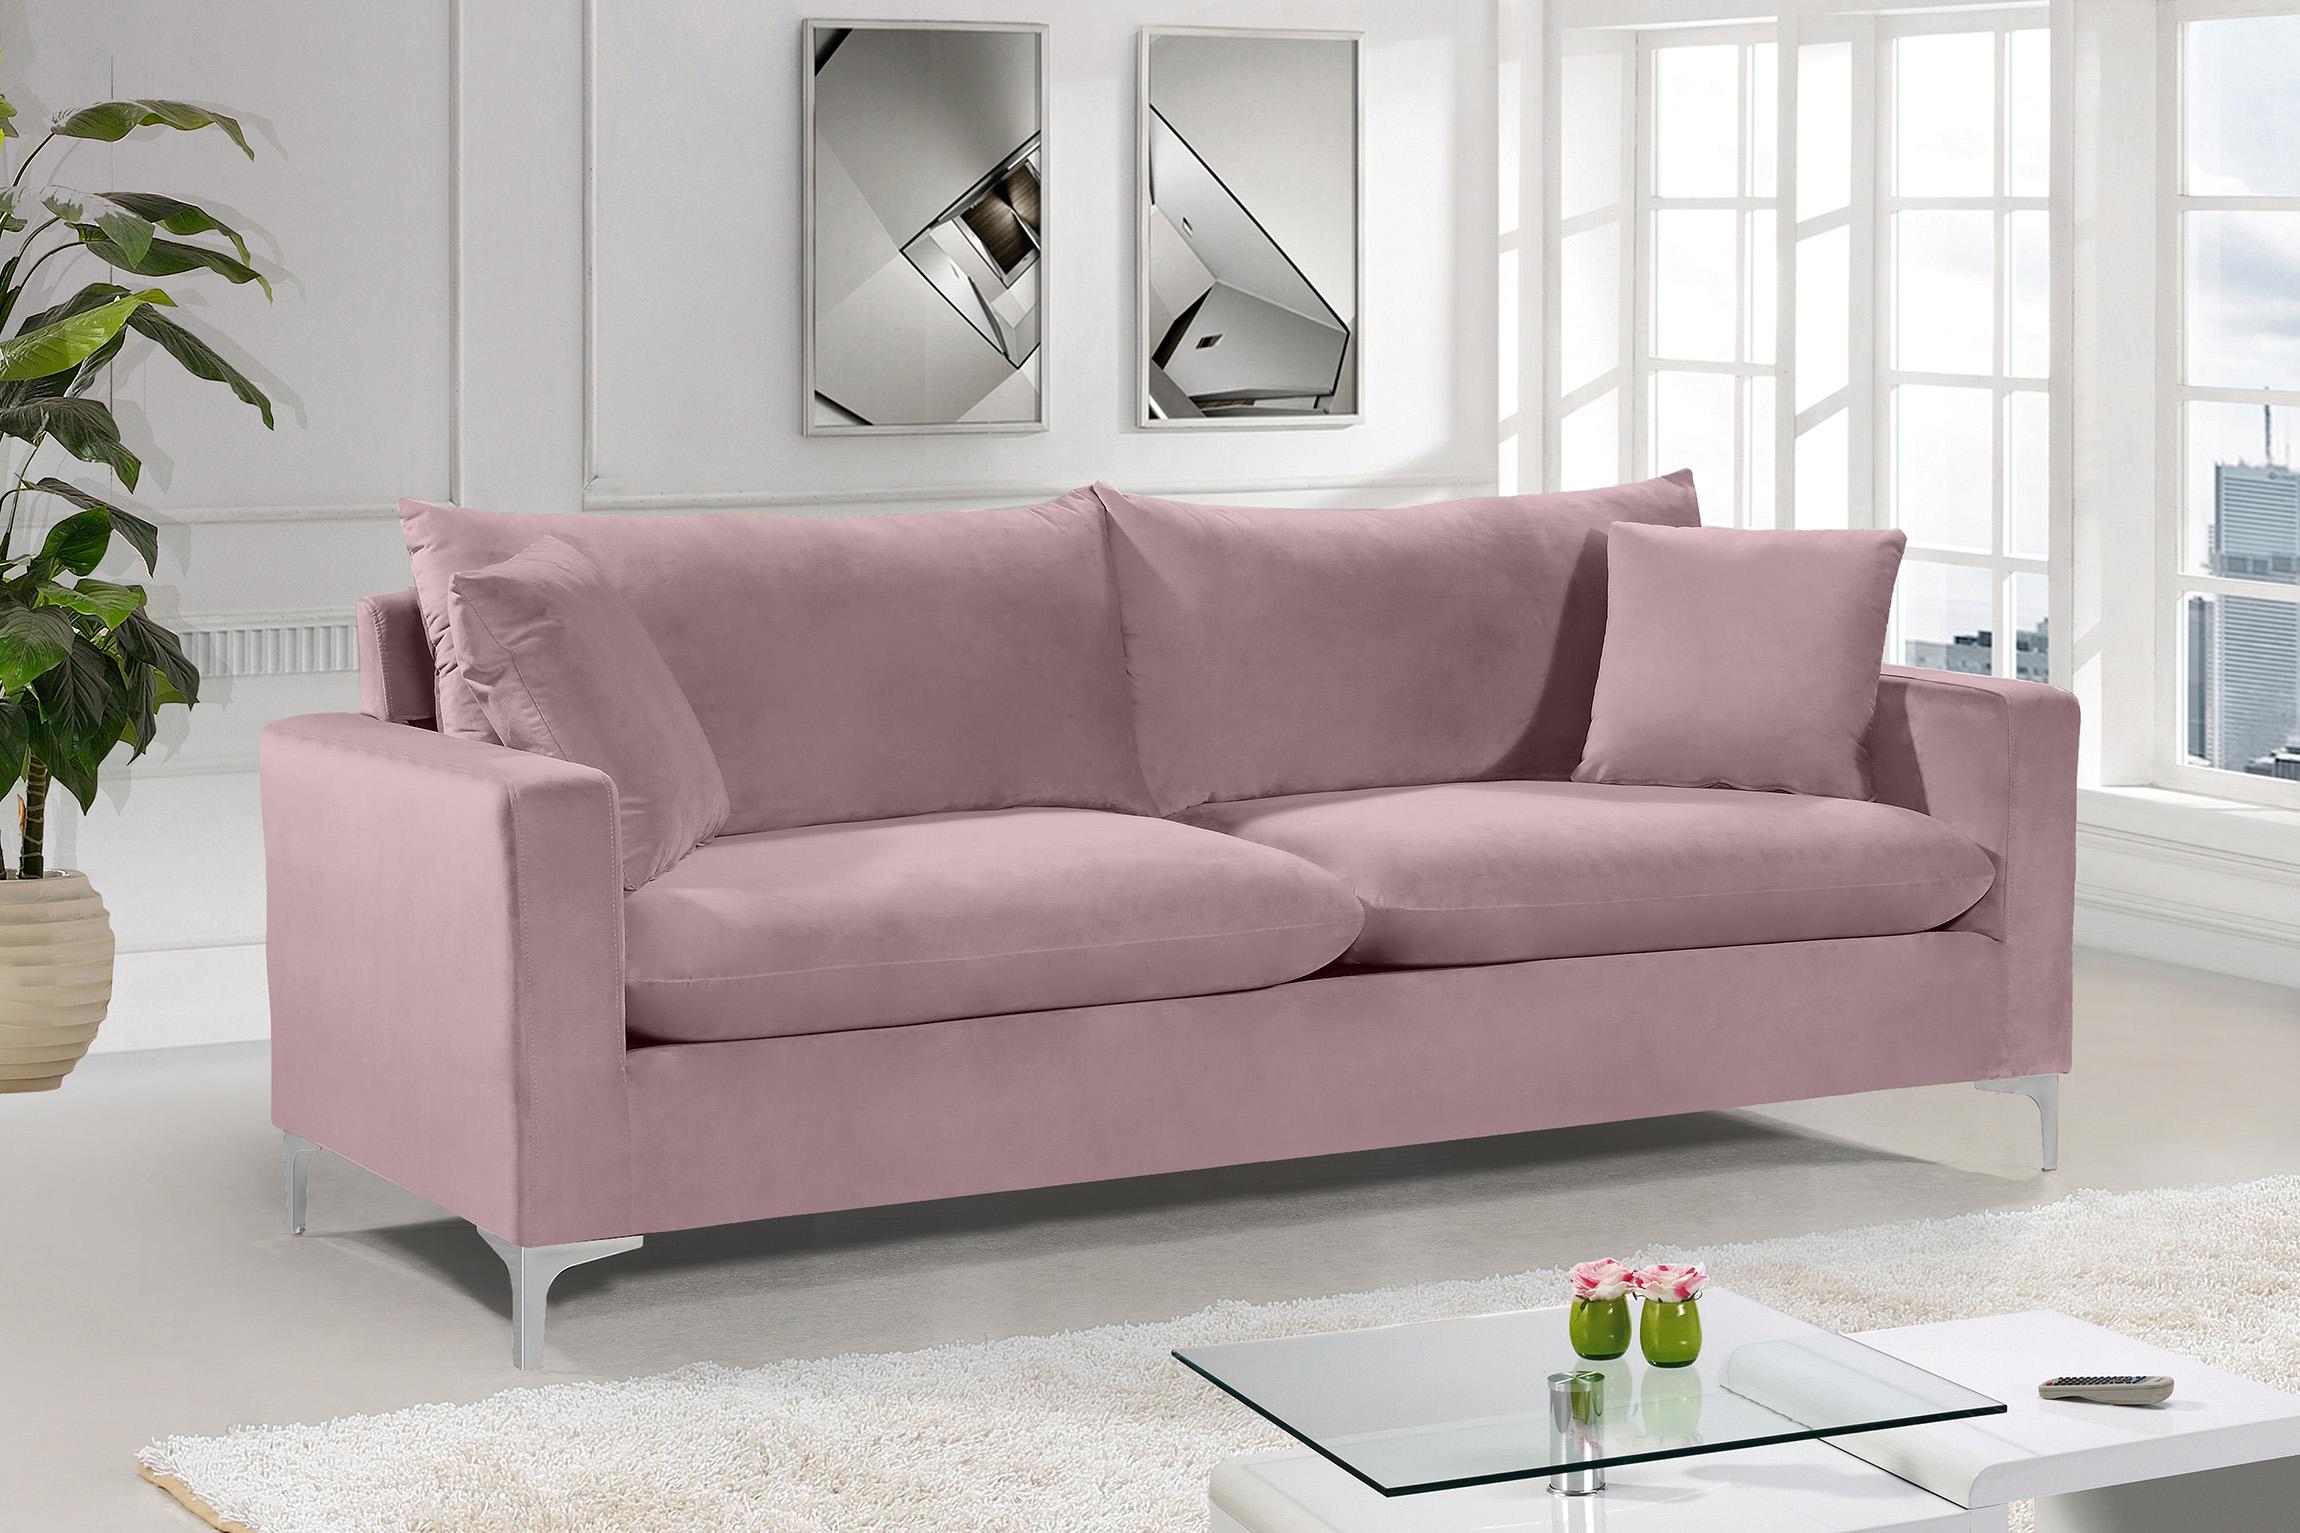 

    
Meridian Furniture Naomi 633Pink-S Sofa Chrome/Pink/Gold 633Pink-S
